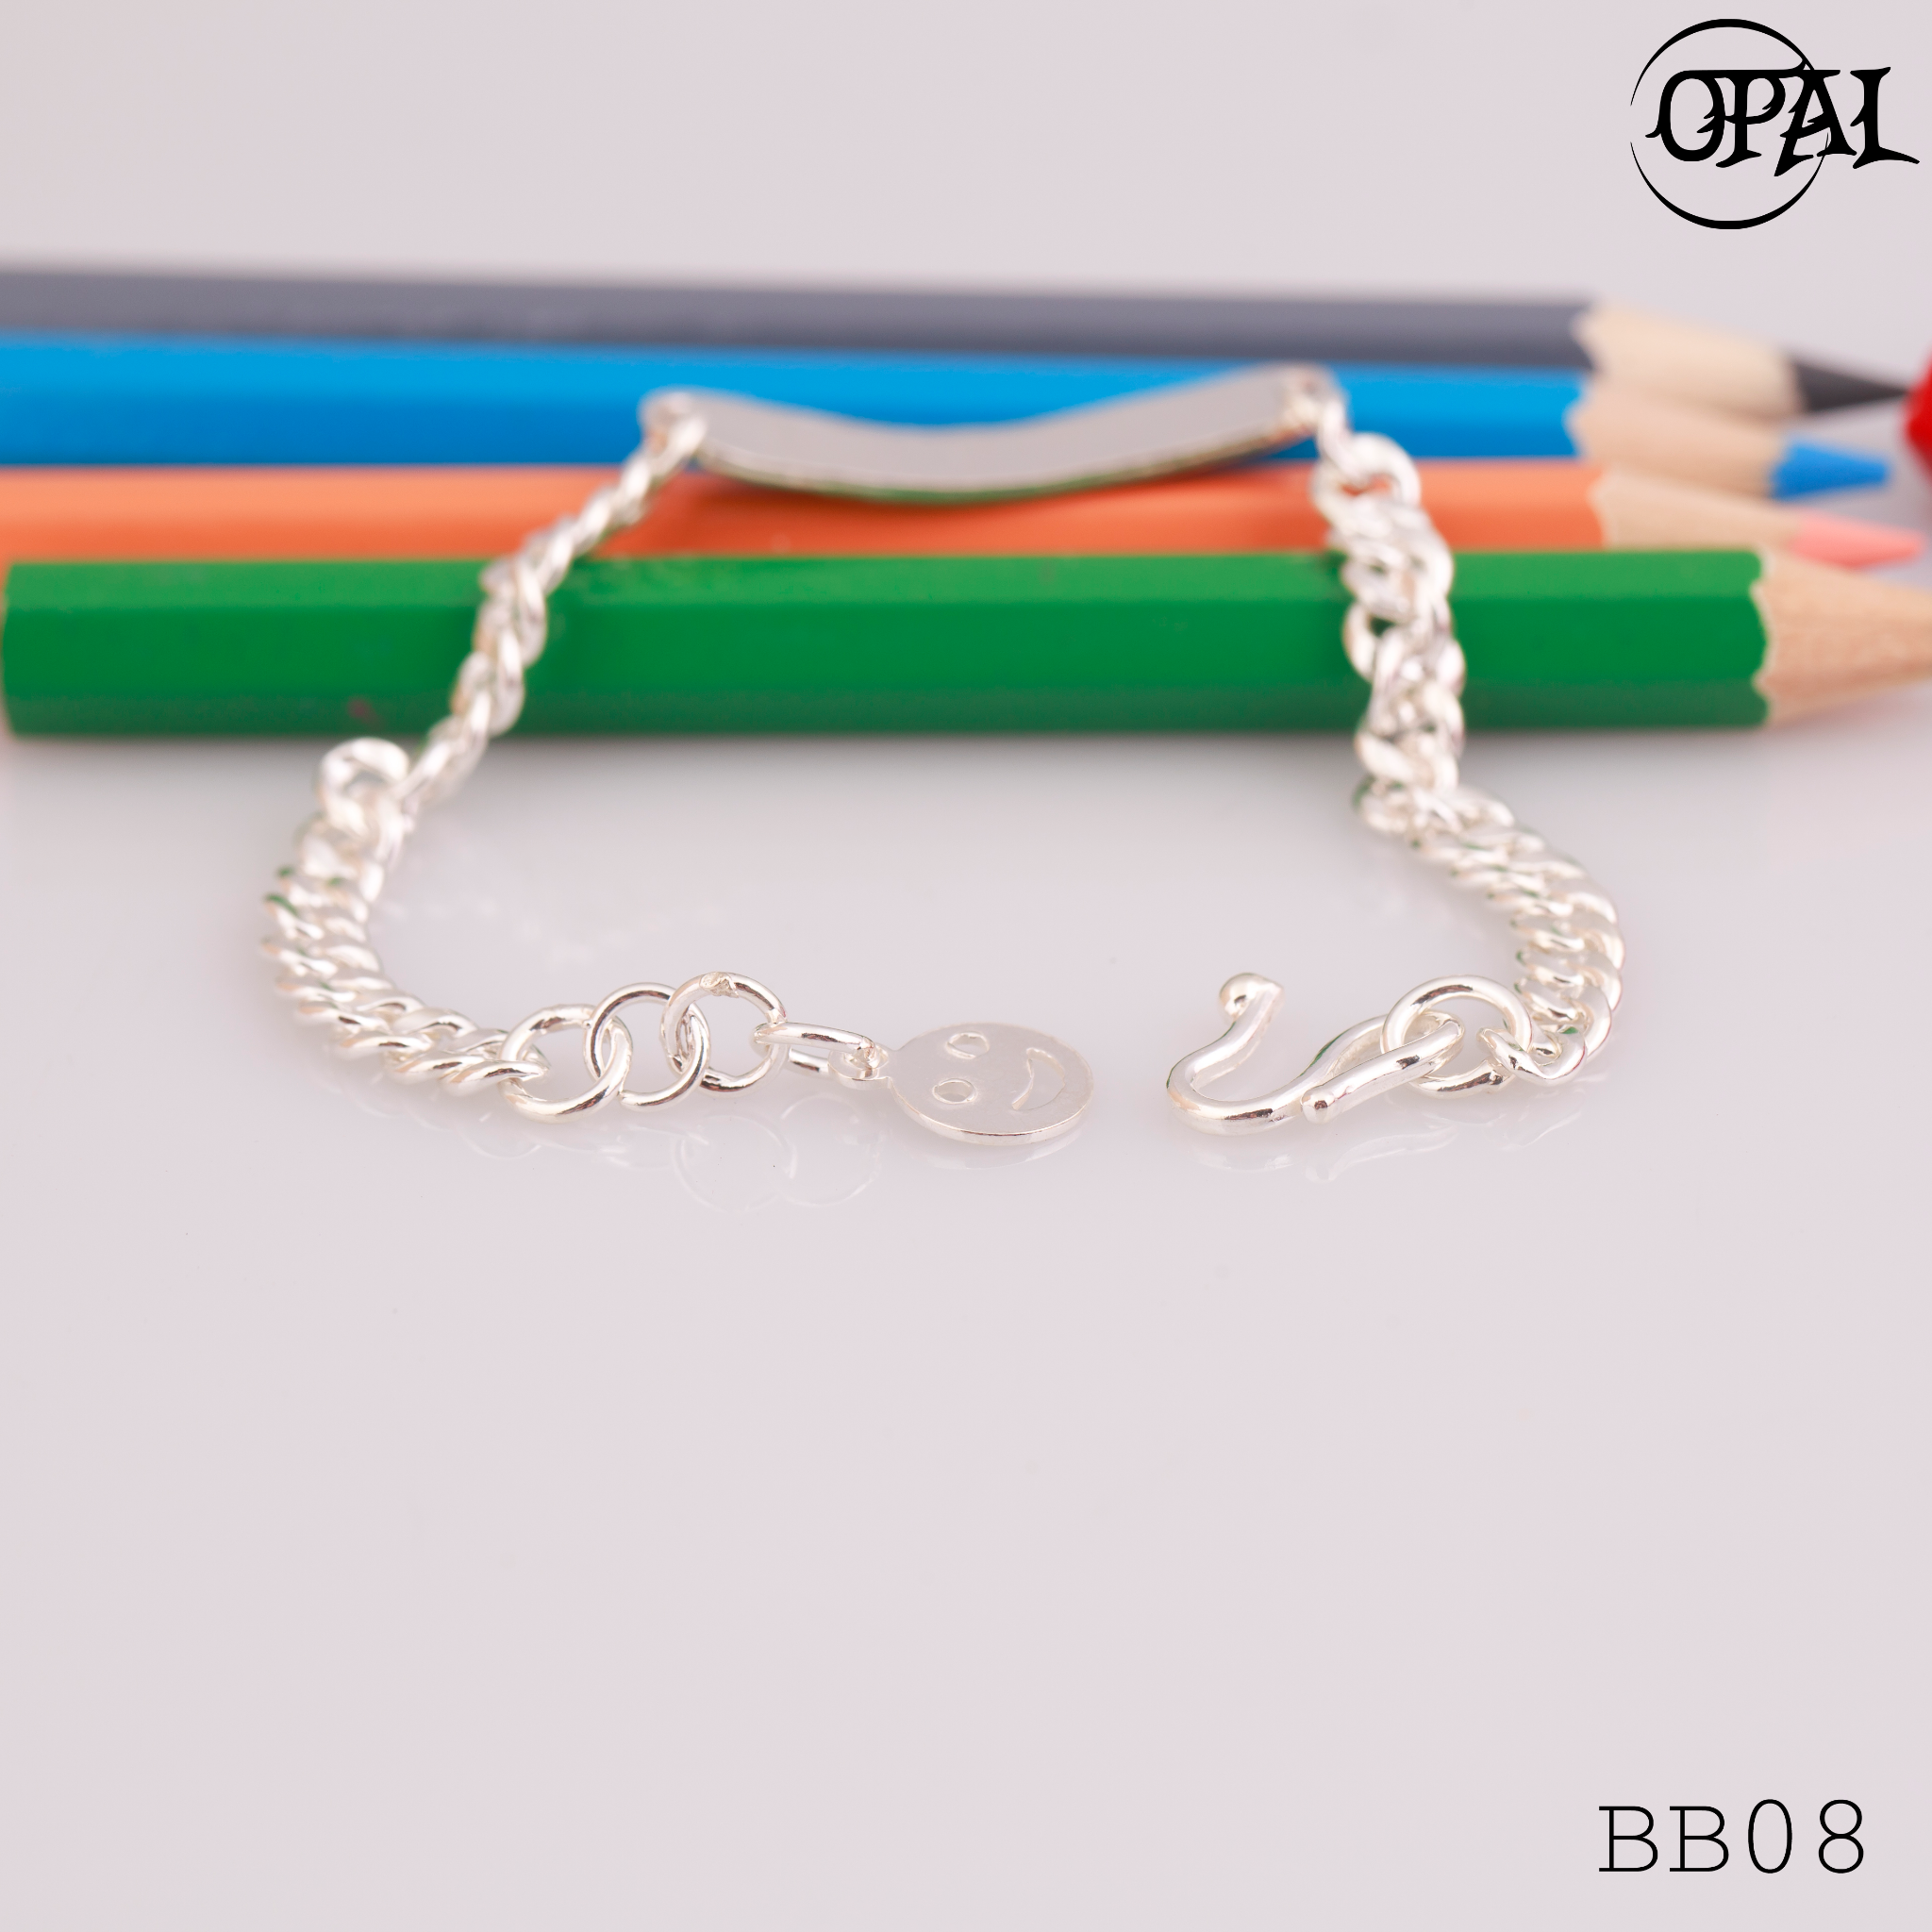  BB08 - Lắc tay bạc cho bé Opal 